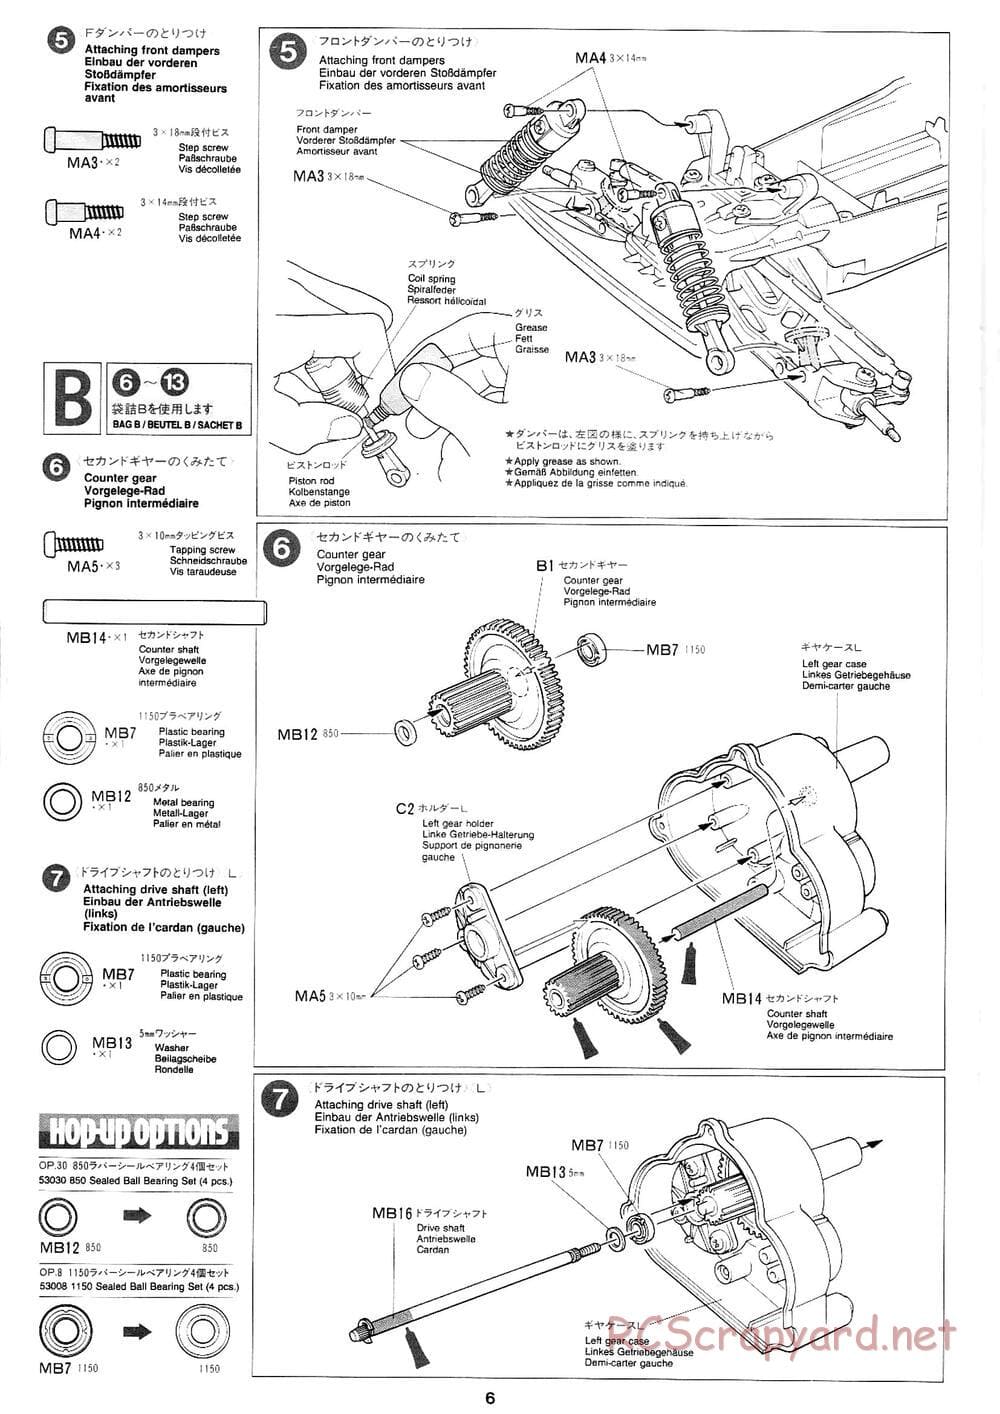 Tamiya - Mad Bull Chassis - Manual - Page 6